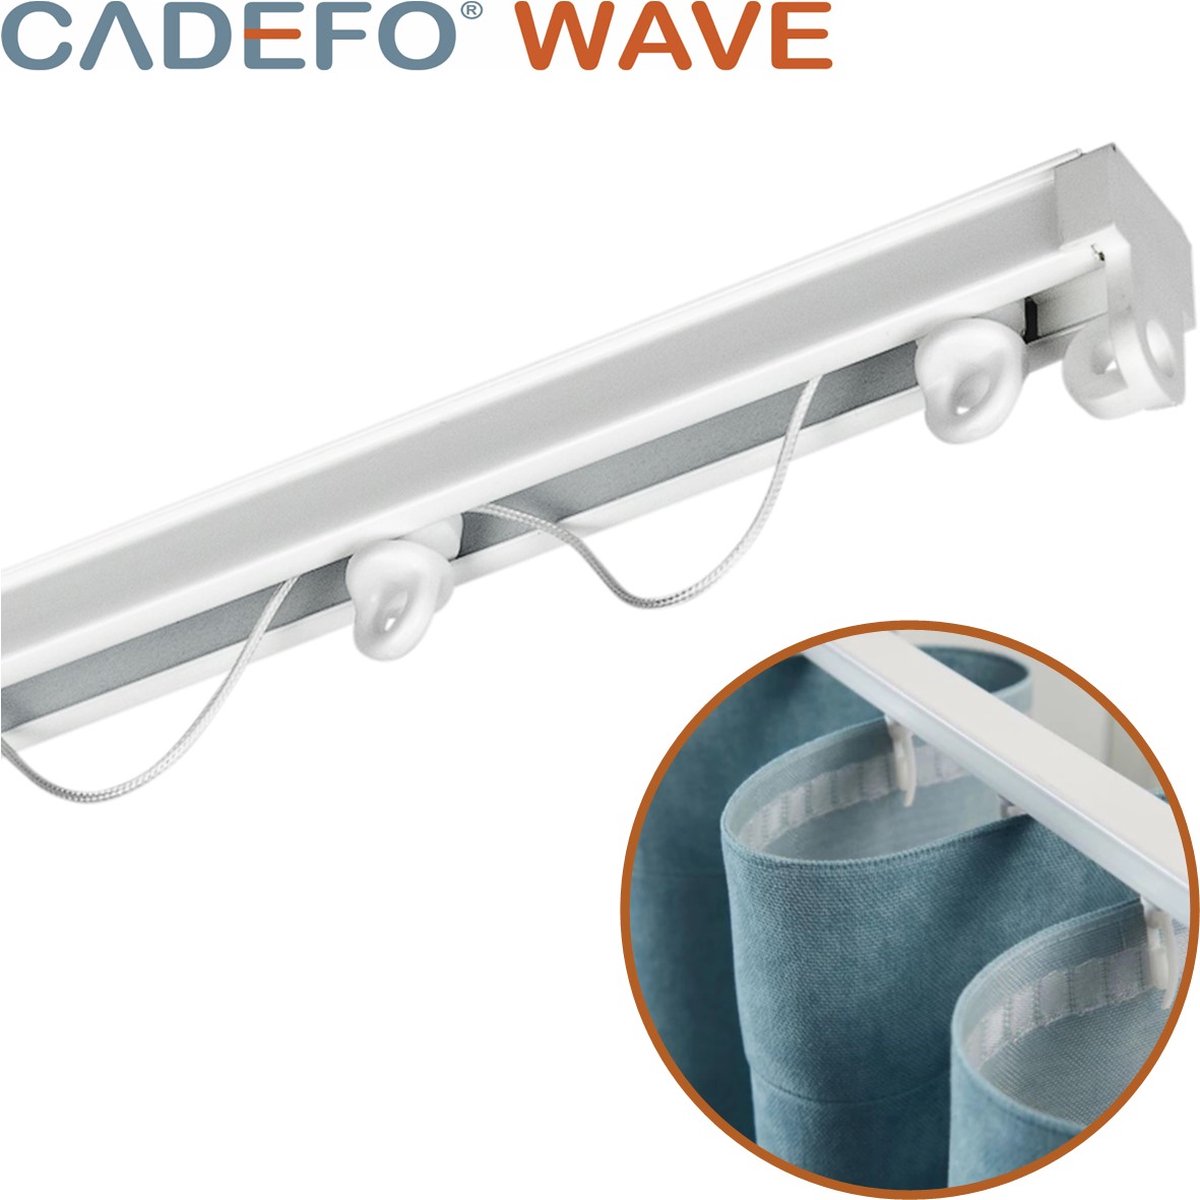 CADEFO WAVE (451 - 500 cm) Gordijnrails - Compleet op maat! - UIT 1 STUK - Leverbaar tot 6 meter - Plafondbevestiging - Lengte 499 cm